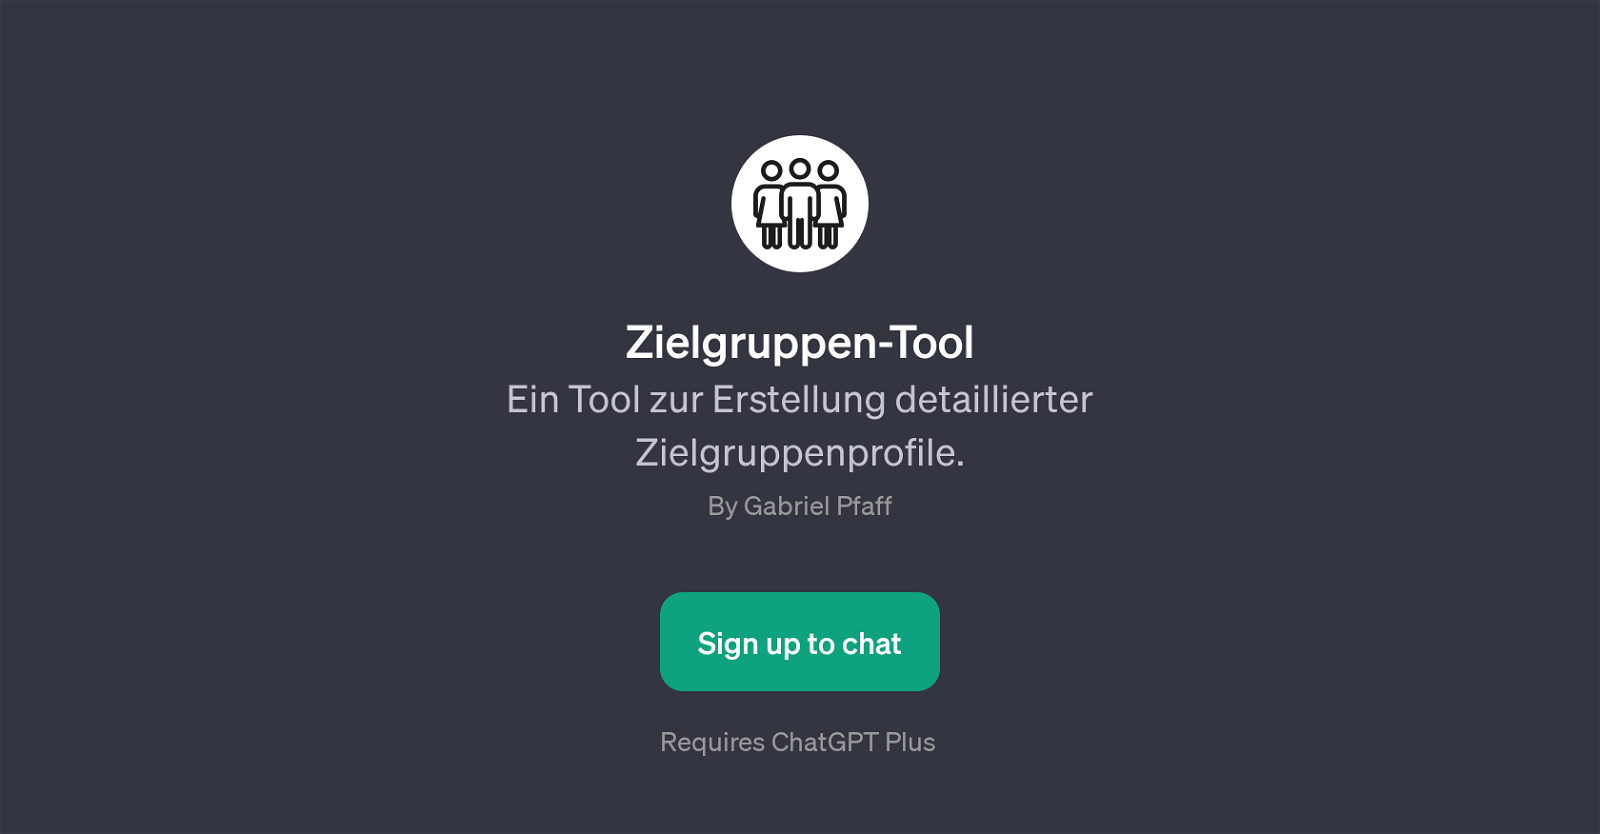 Zielgruppen-Tool website